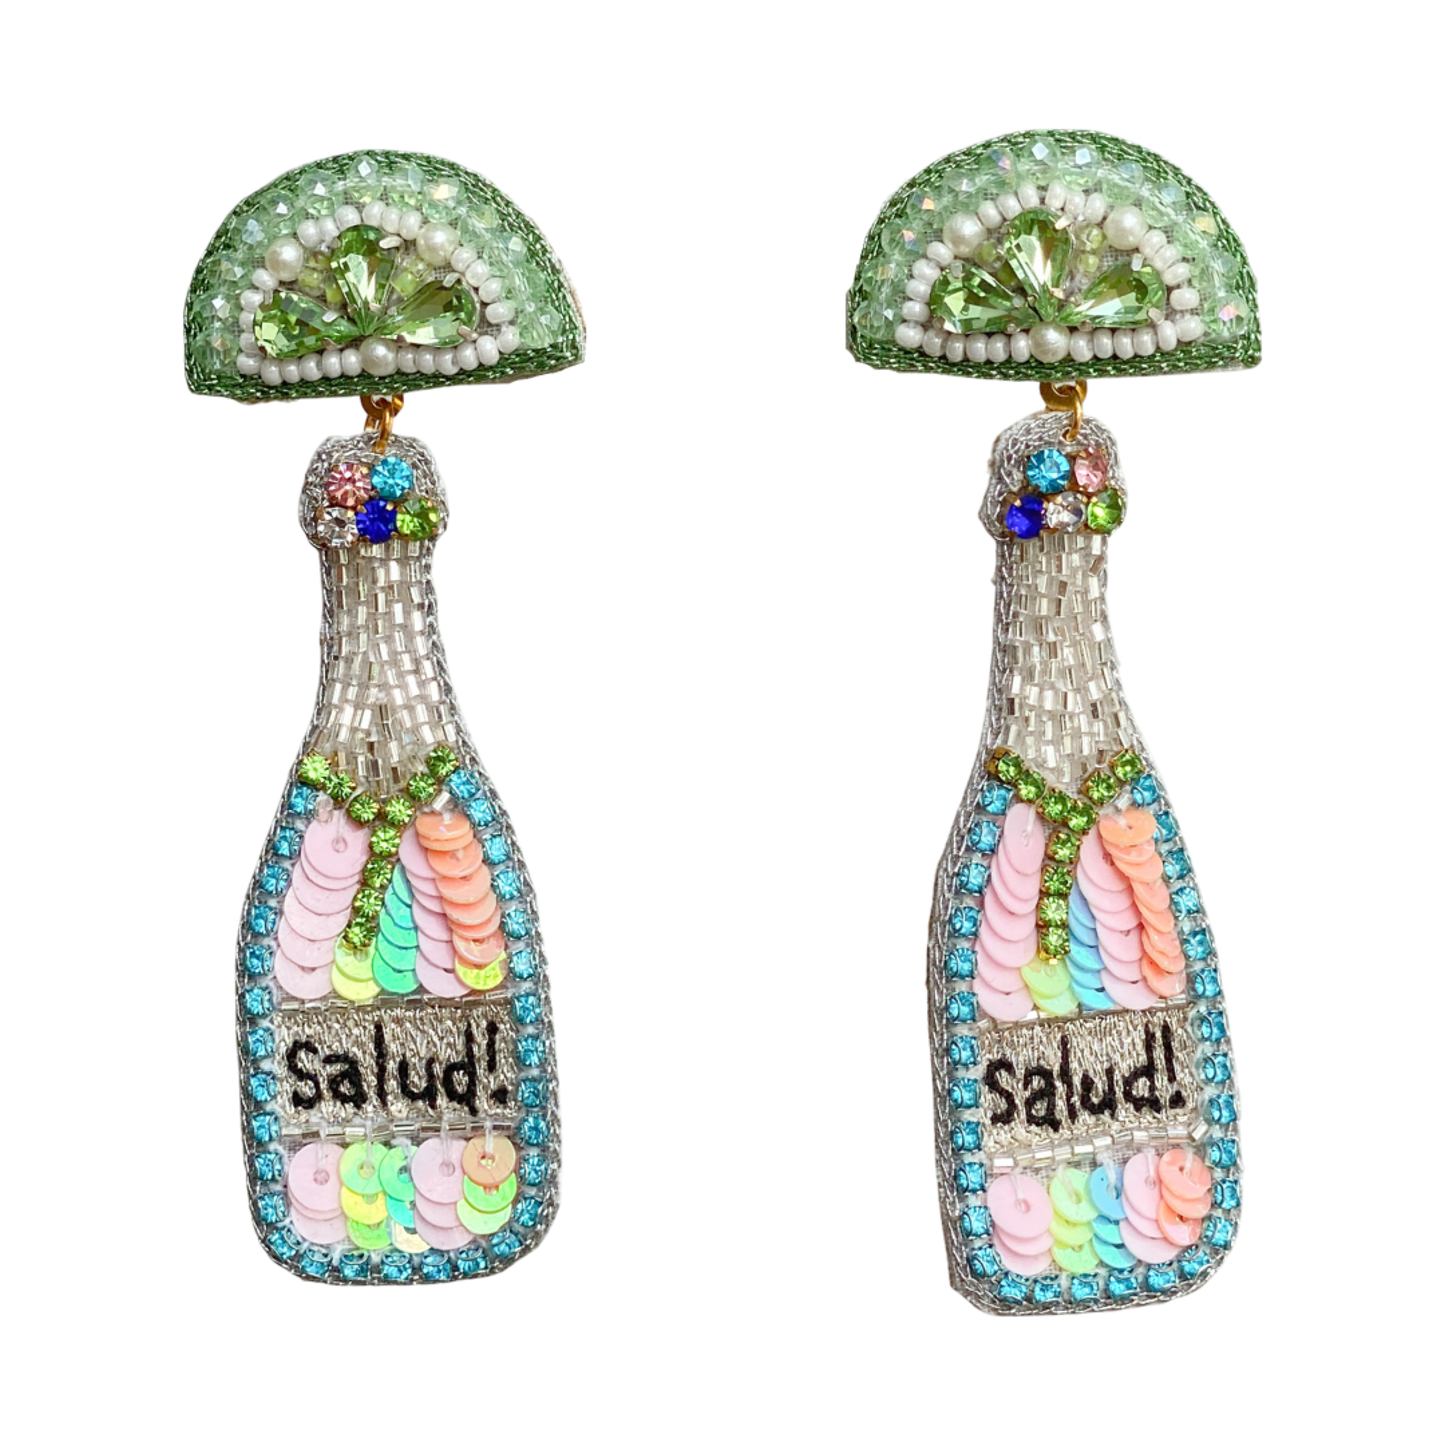 Gaby & Grace - “Salud!” Tequila Bottle Earrings